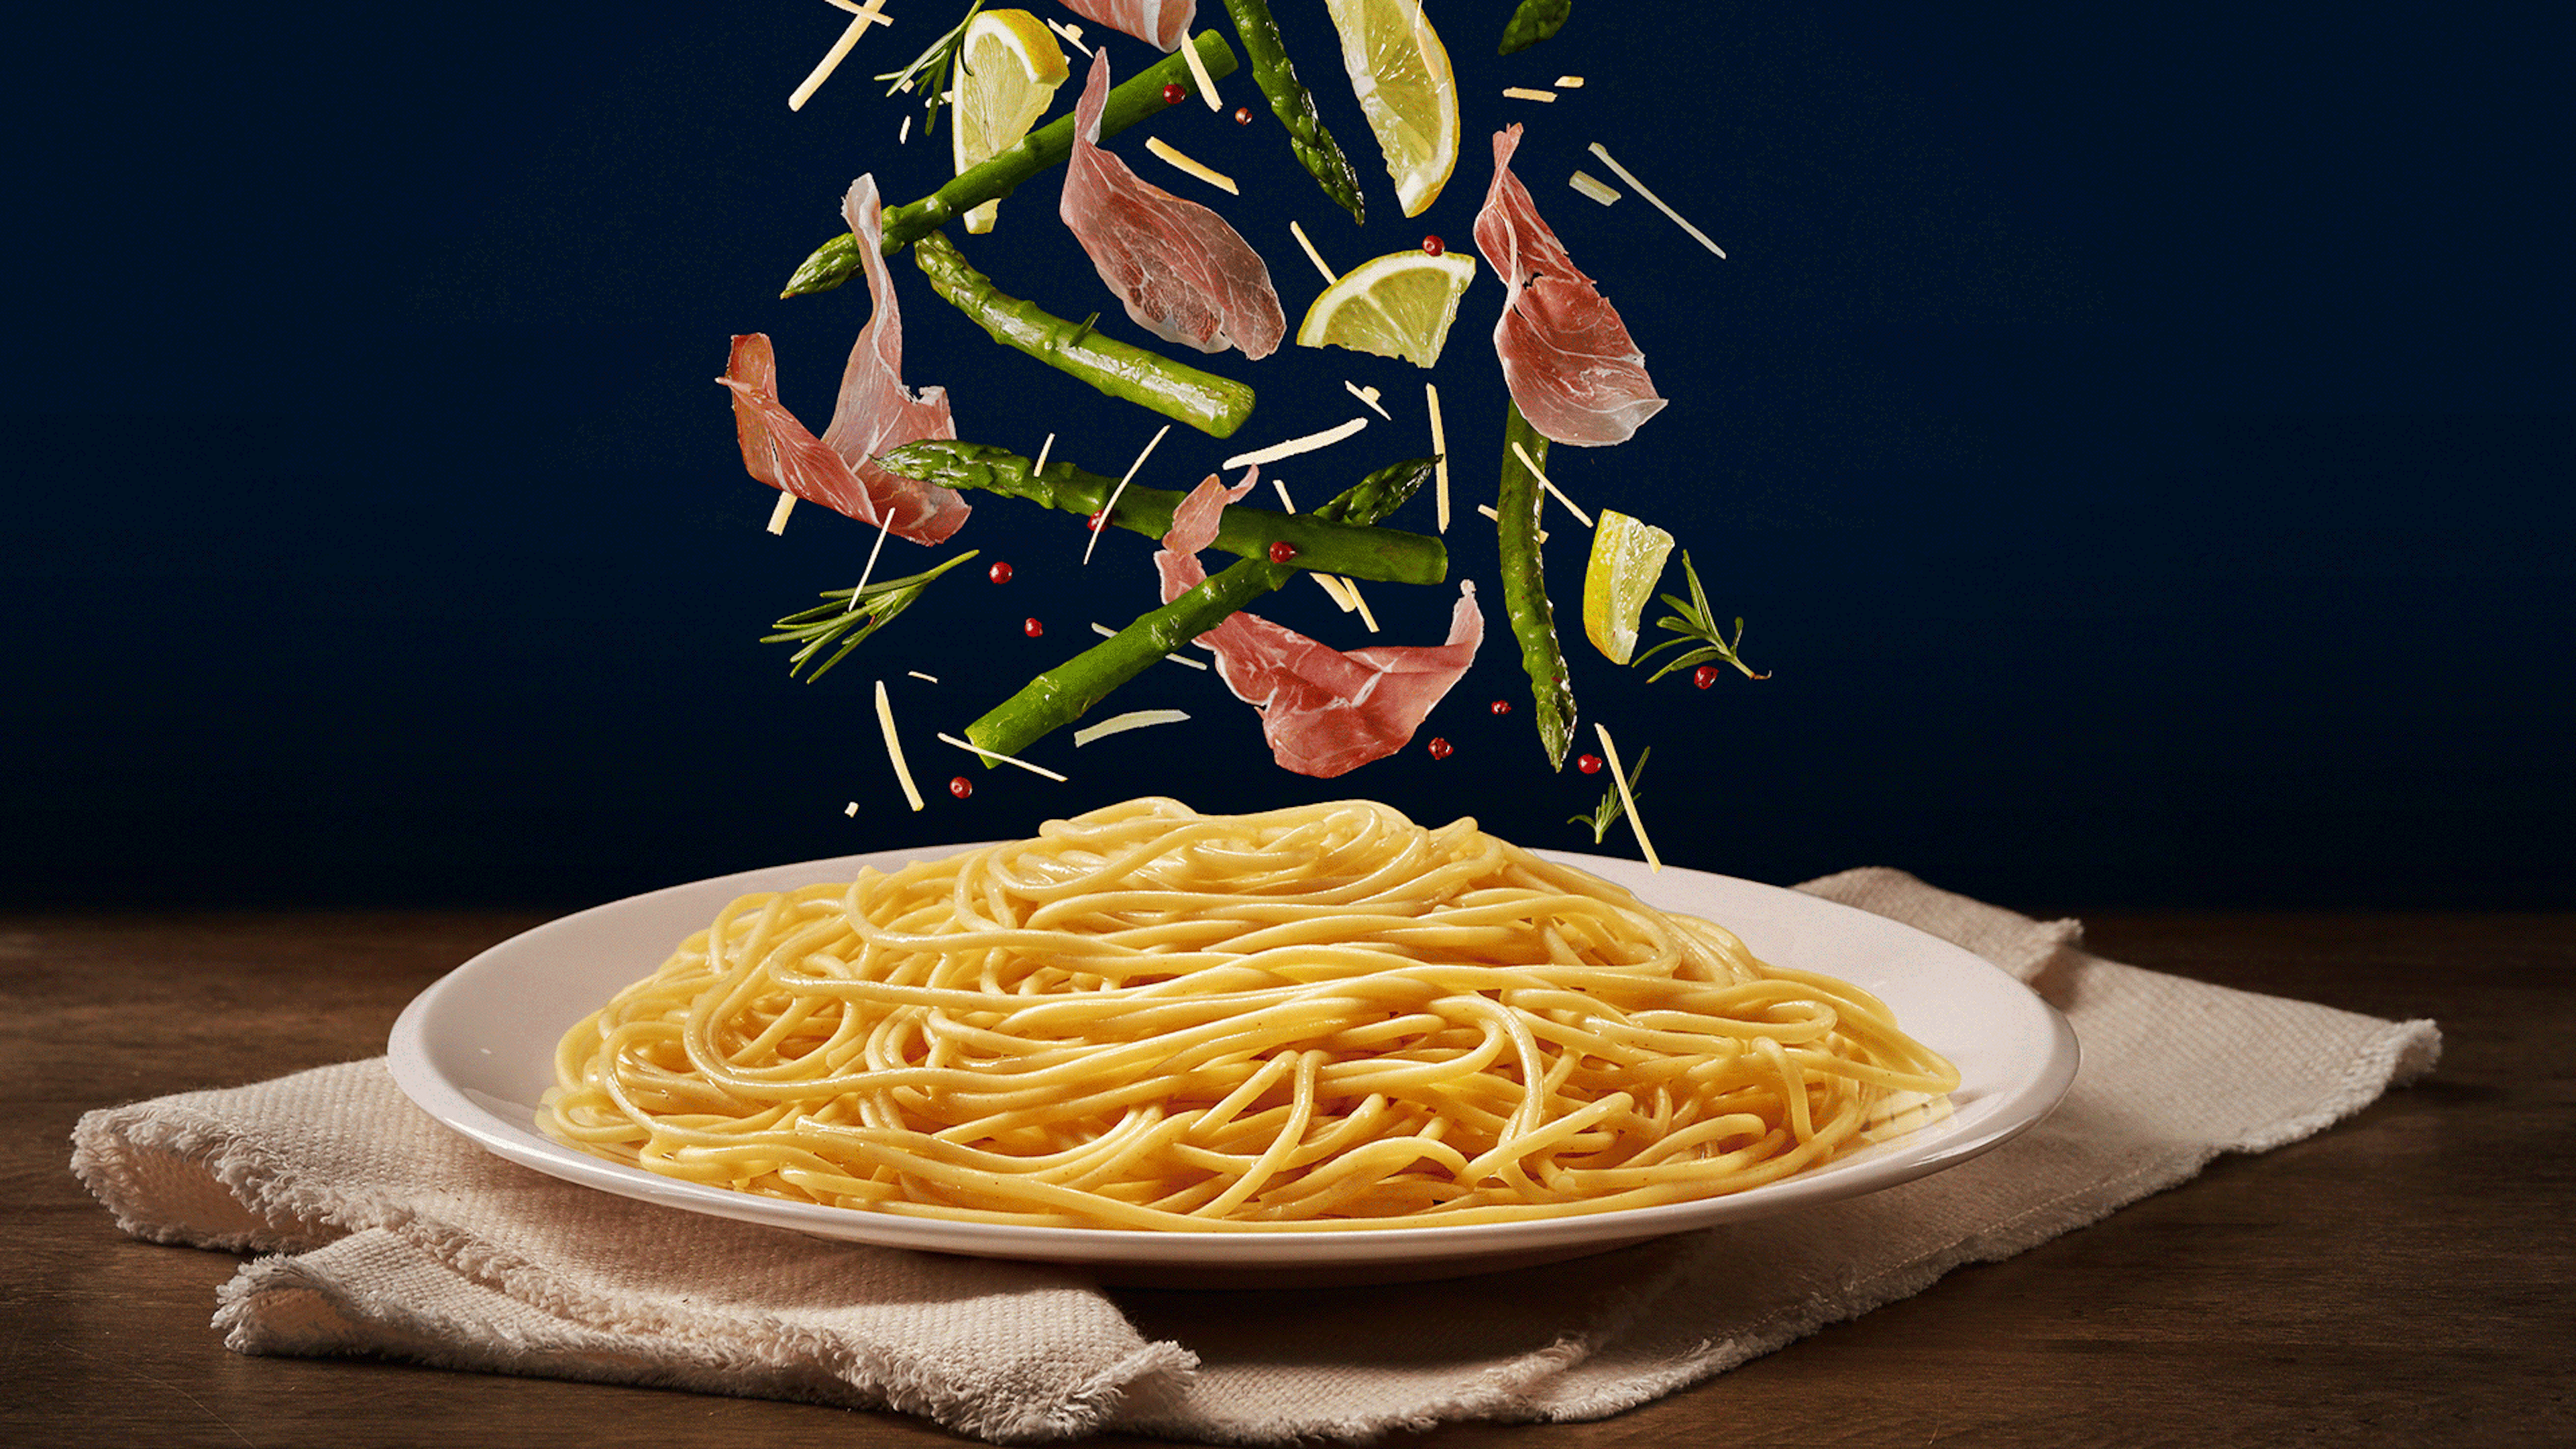 Gif com os ingredientes (aspargos, limão e presunto parma) caindo no macarrão espaguete de várias formas diferentes